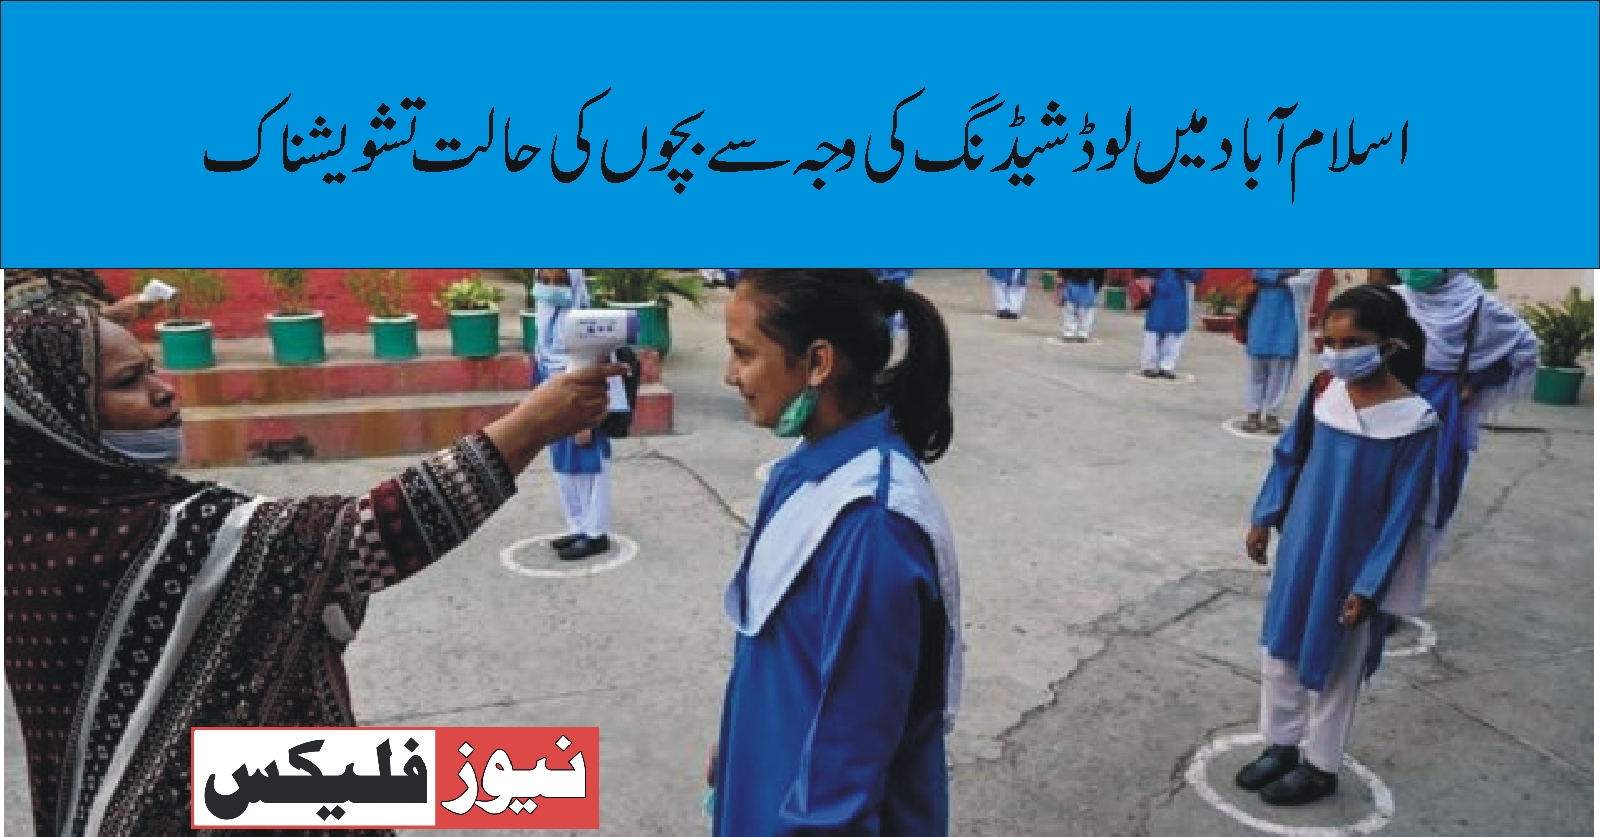 اسلام آباد میں لوڈ شیڈنگ کی وجہ سے سکول میں بچوں کی حالت تشویشناک